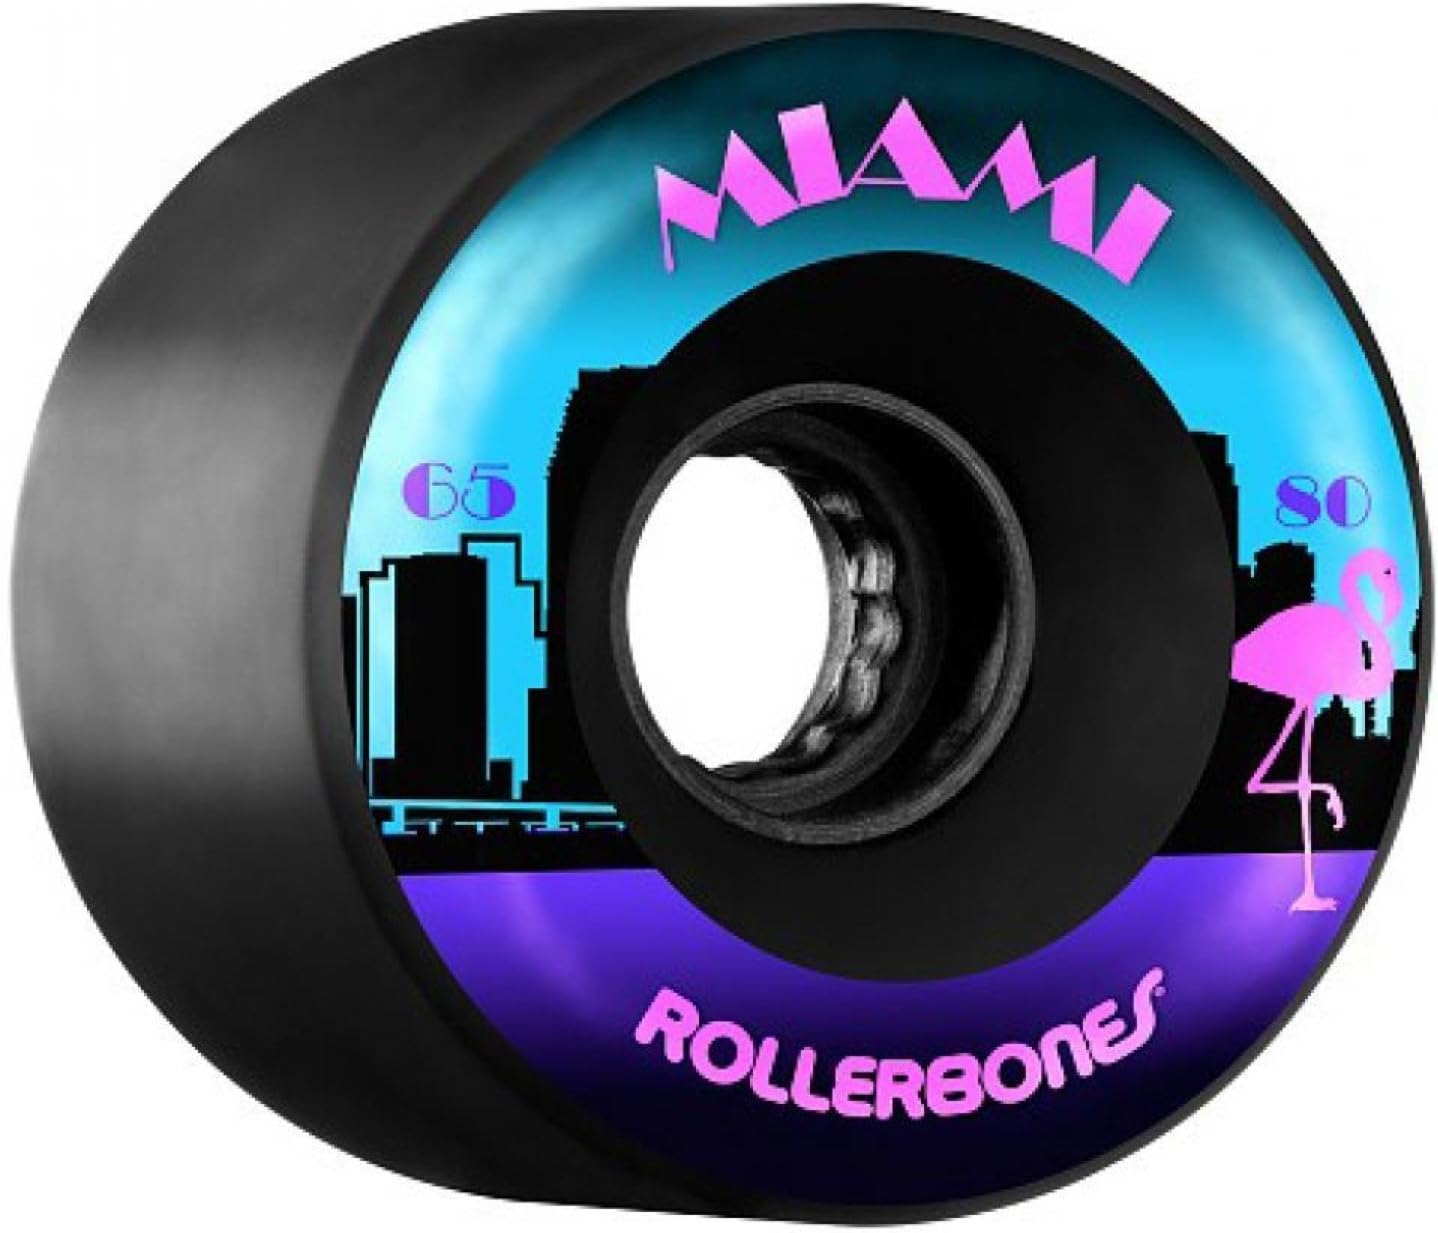 Roller Bones Miami Outdoor Wheels 80a